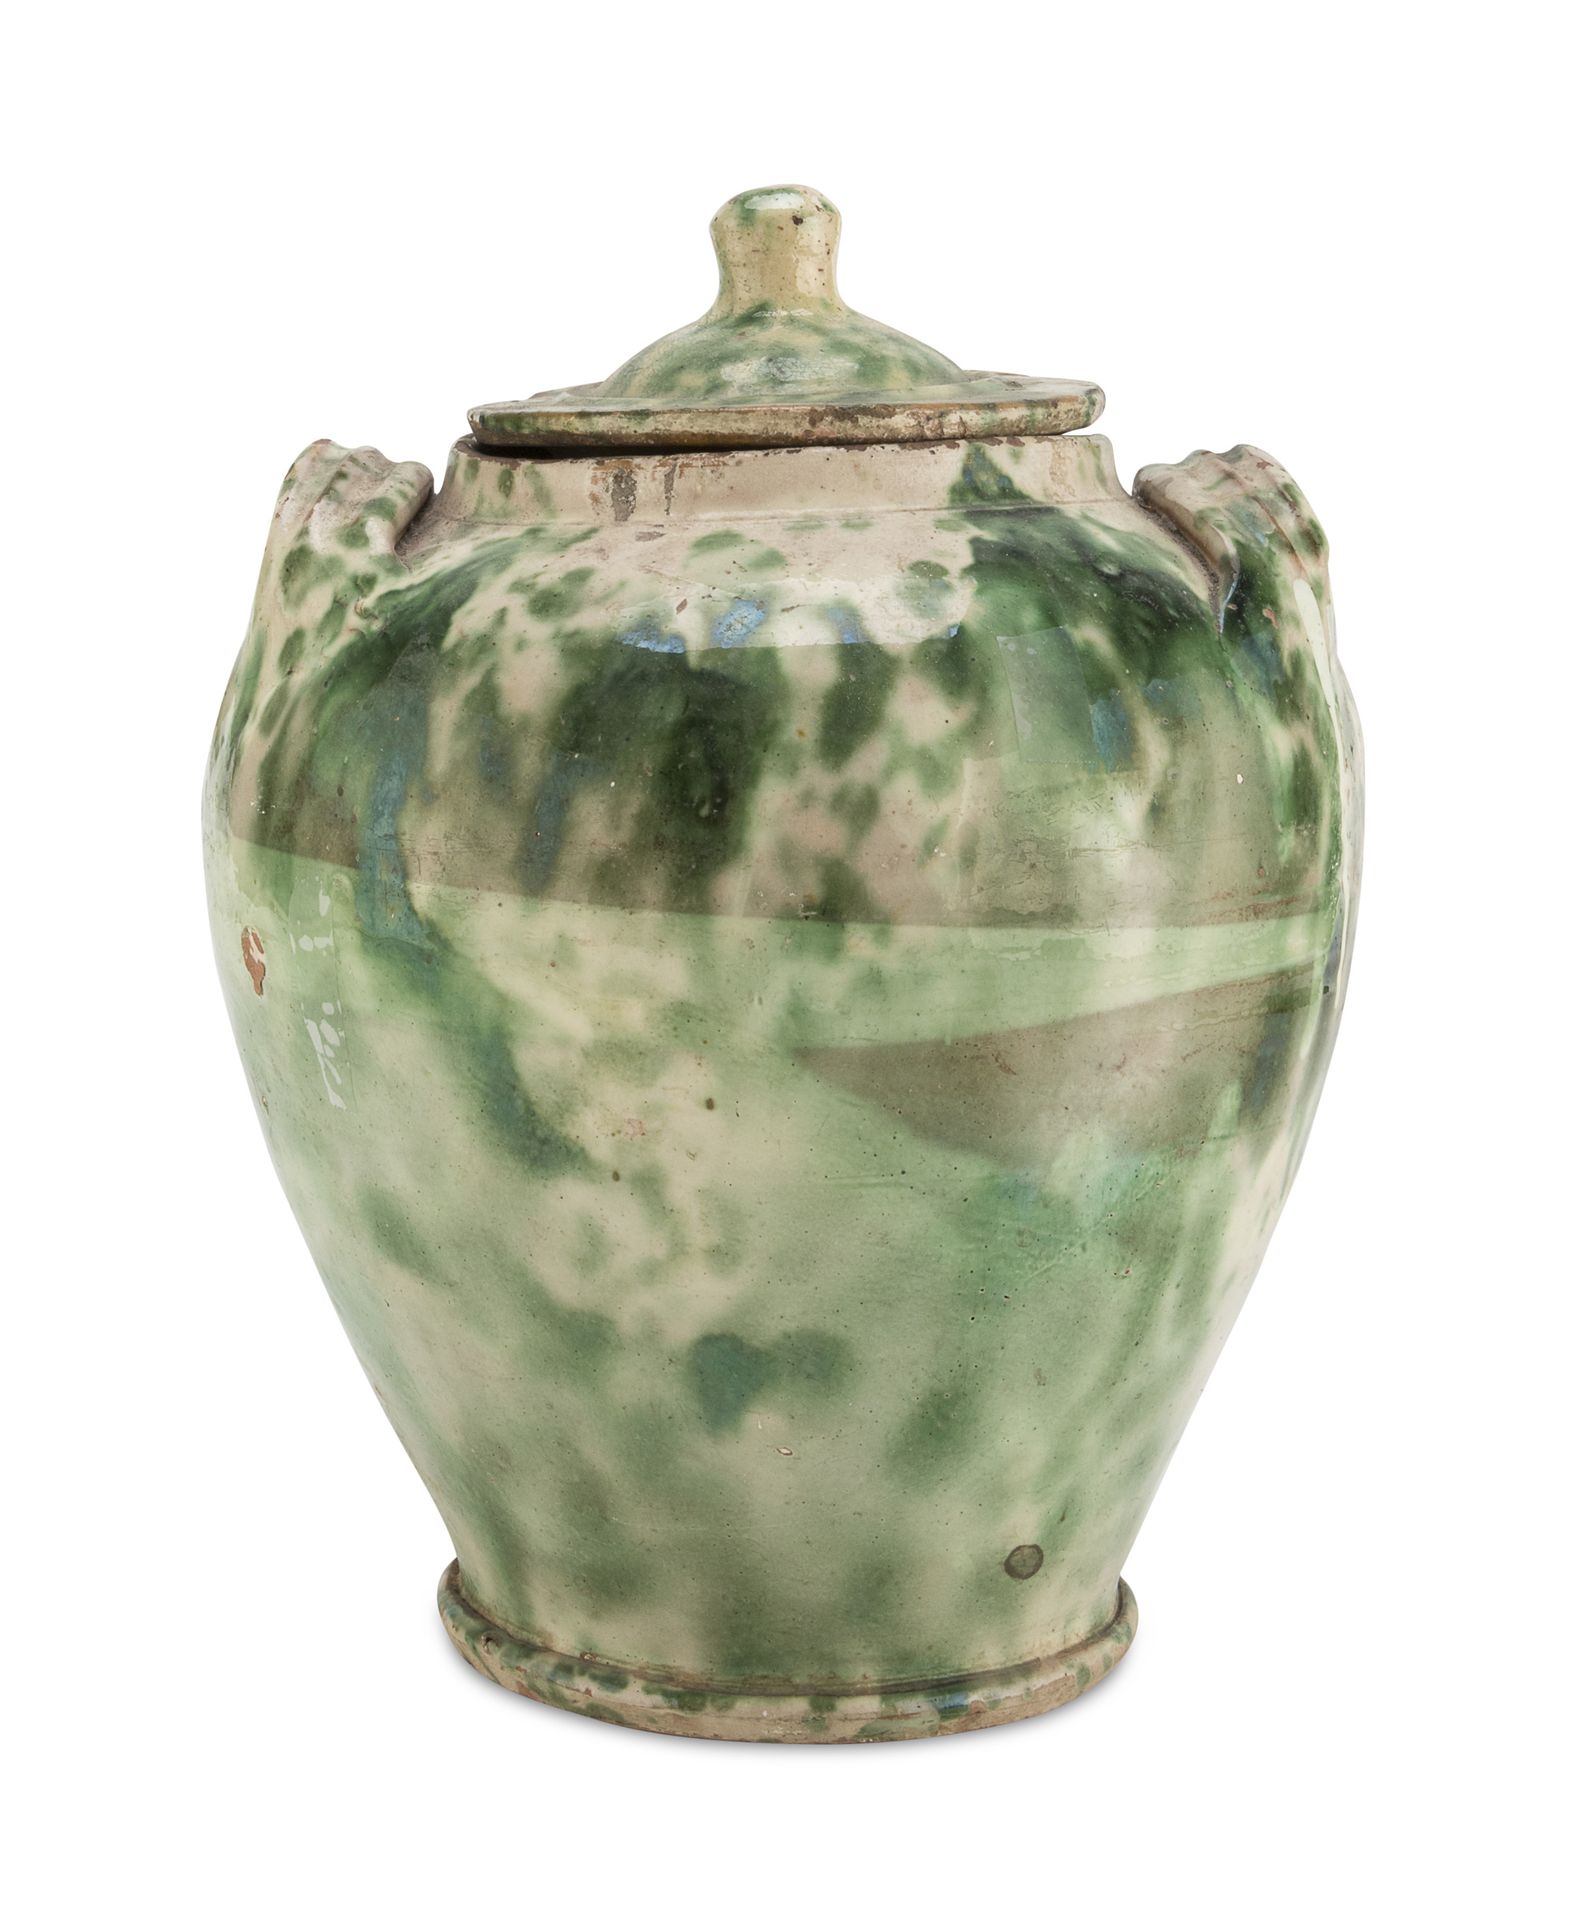 Null 陶器食品容器，Grottaglie 十九世纪

带盖子，有斑点的绿色珐琅。丝带手柄。

尺寸 cm. 37 x 27 x 27.

裂缝。